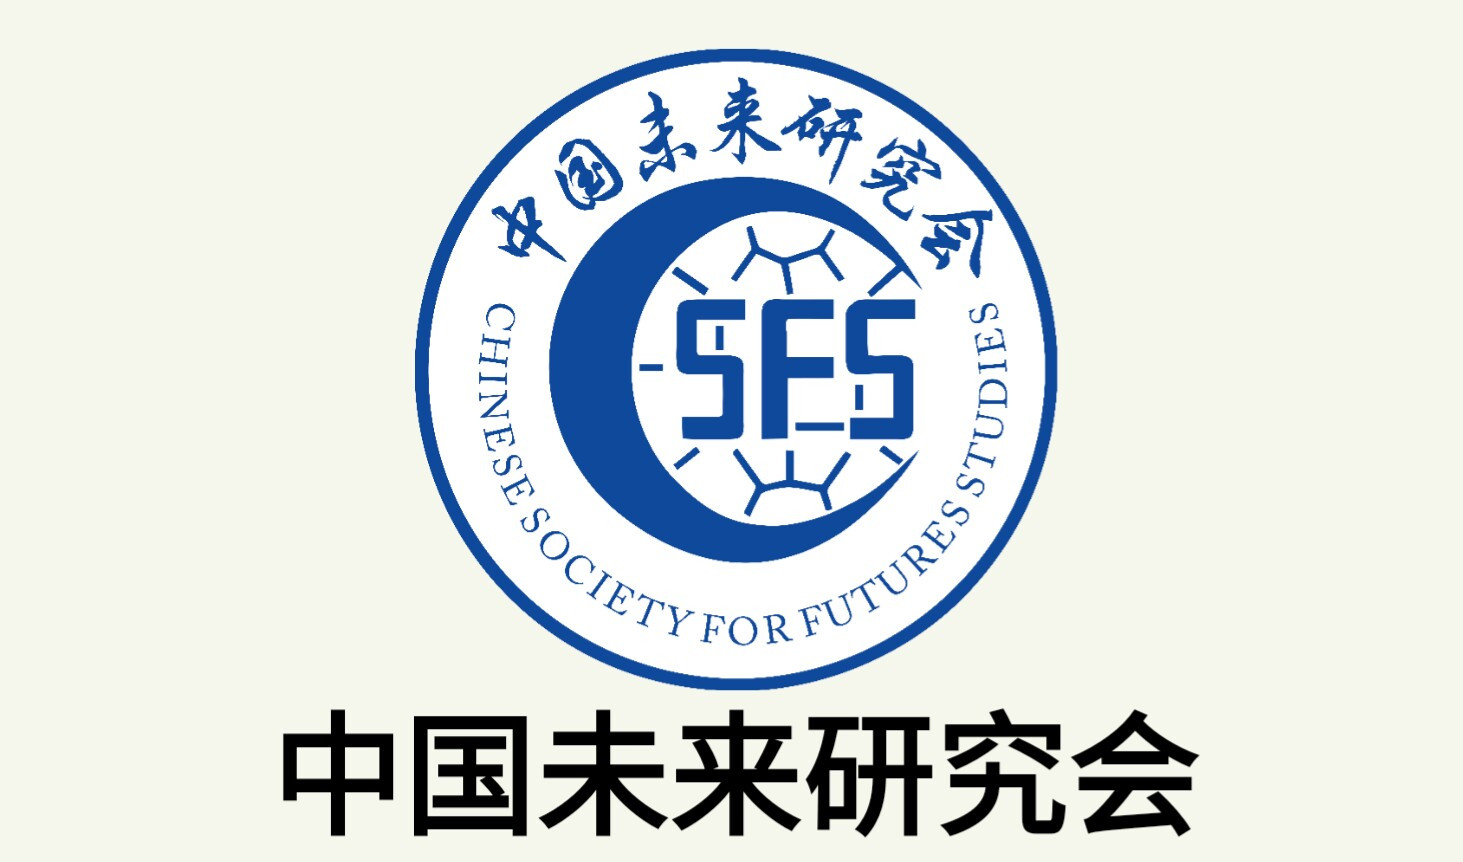 第二届中国未来与发展大会将于7月下旬在北京隆重召开